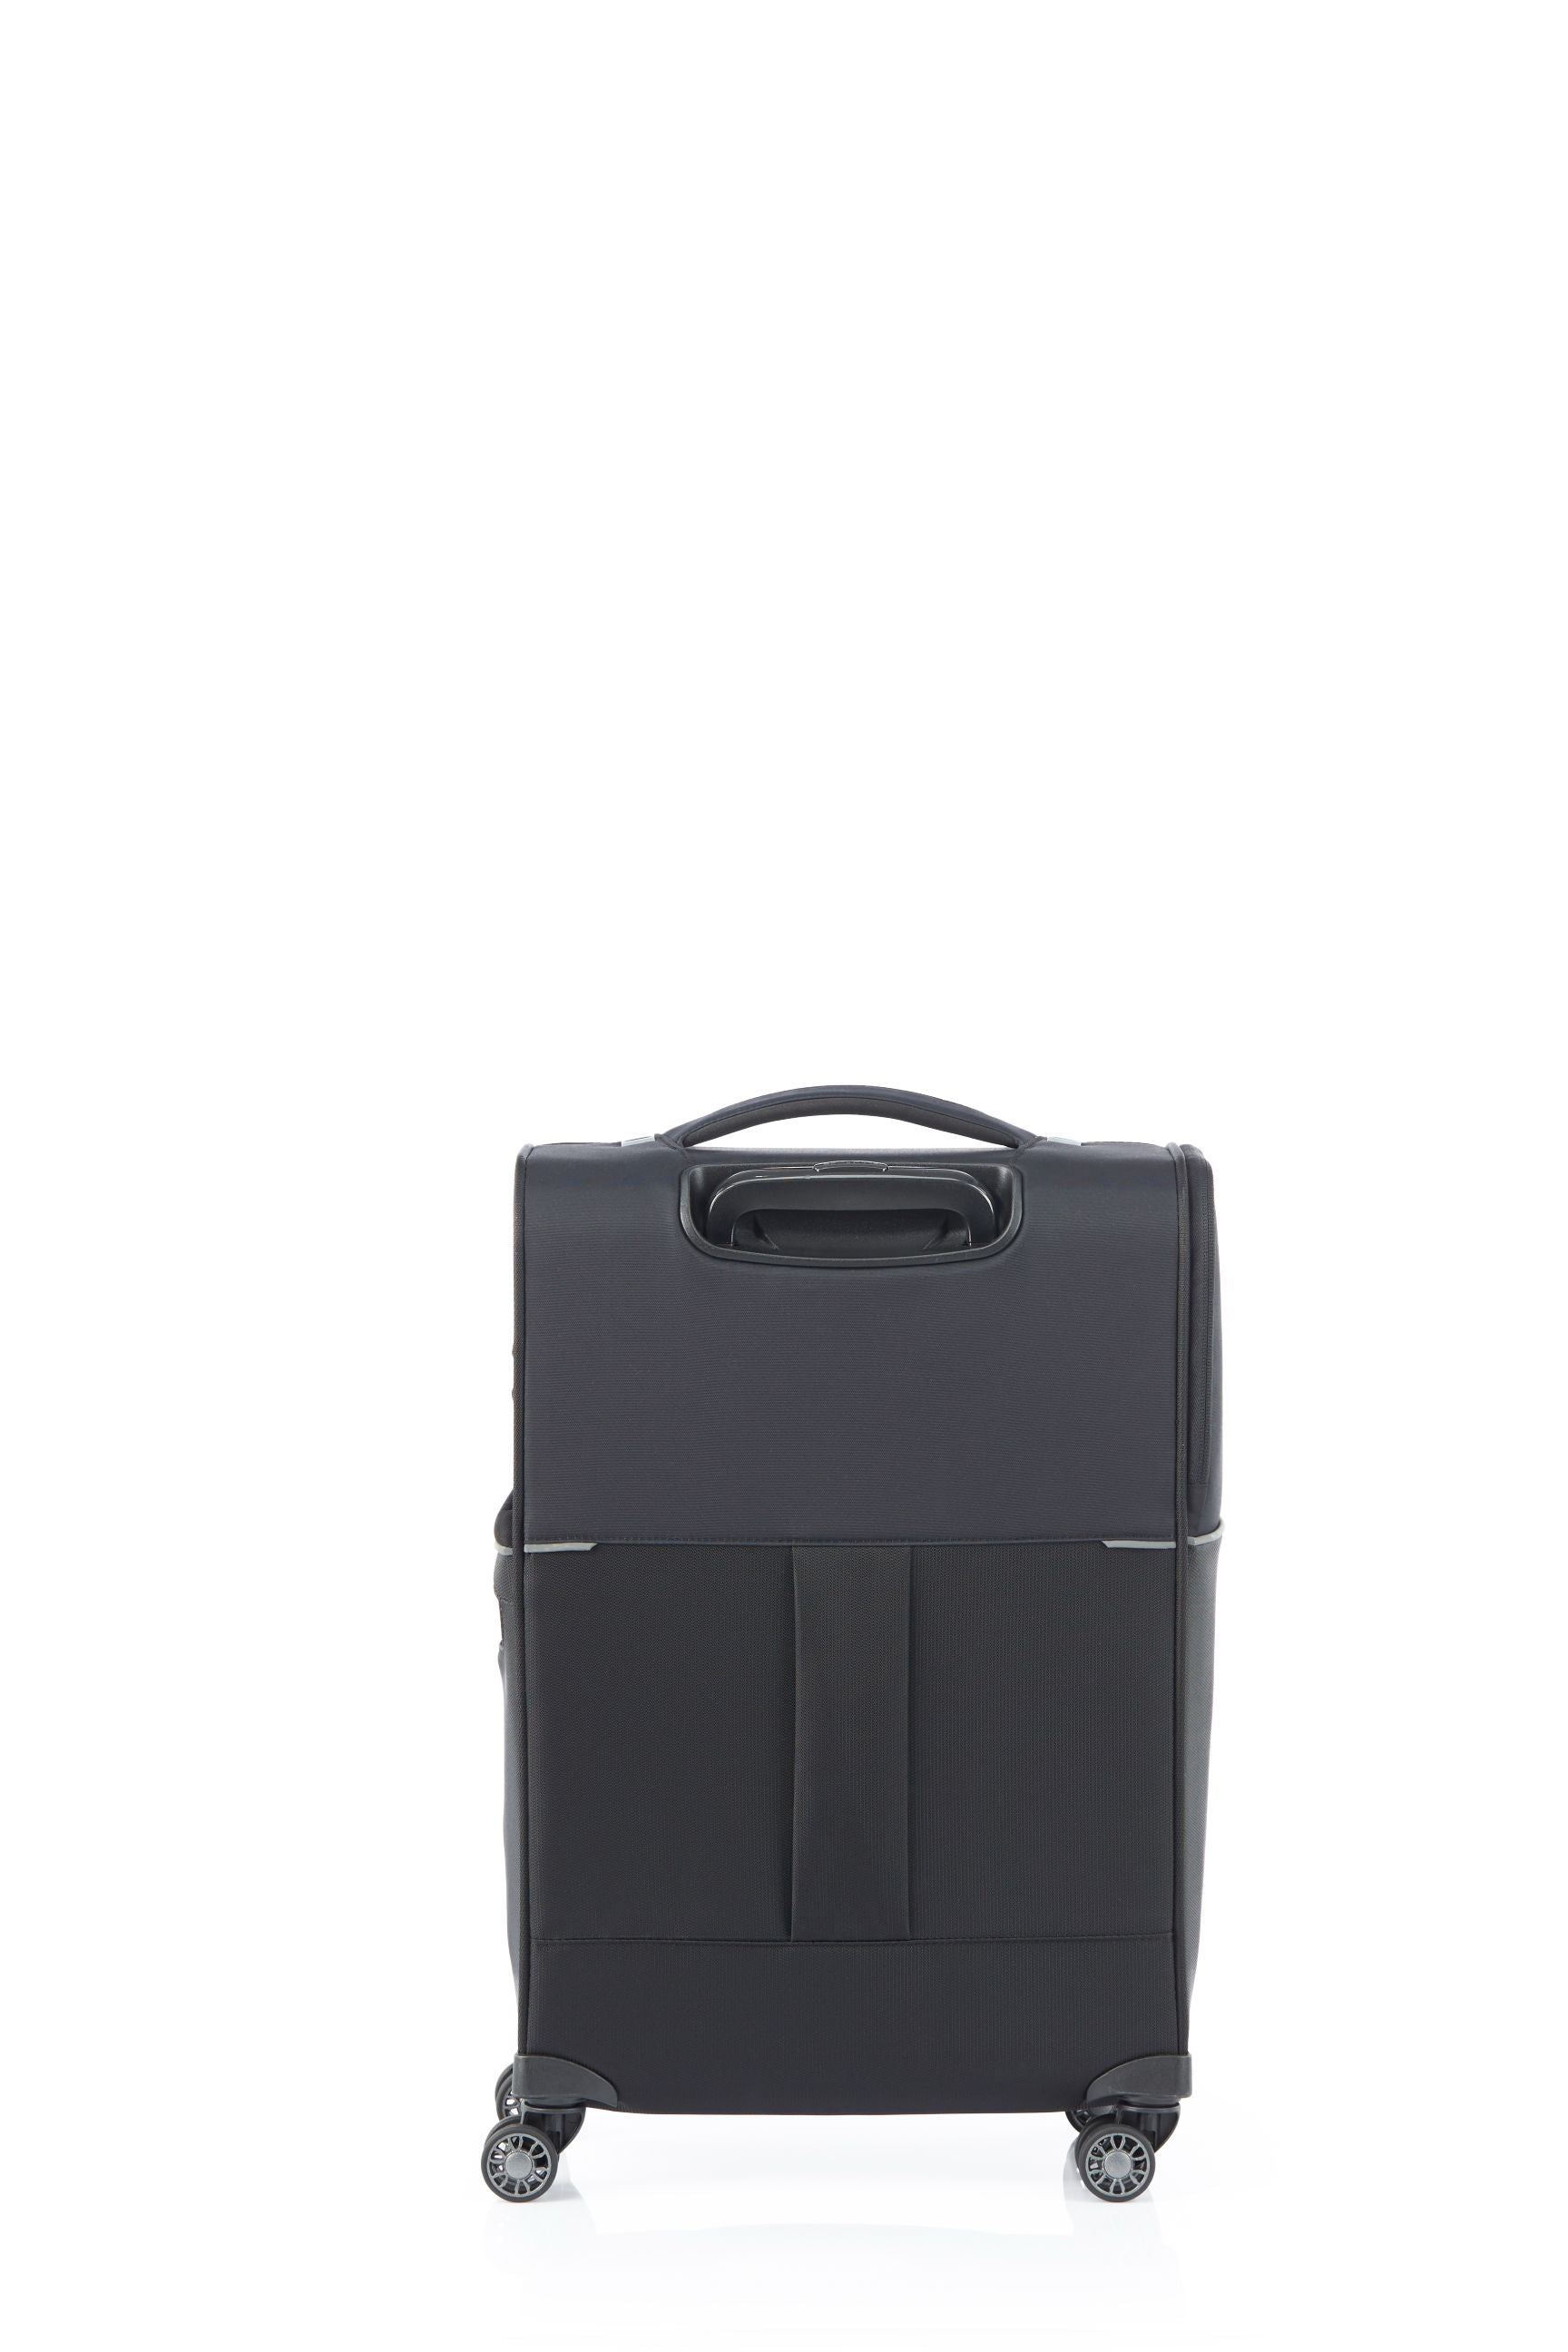 Samsonite - 73HR 55cm Small Suitcase - Black-12